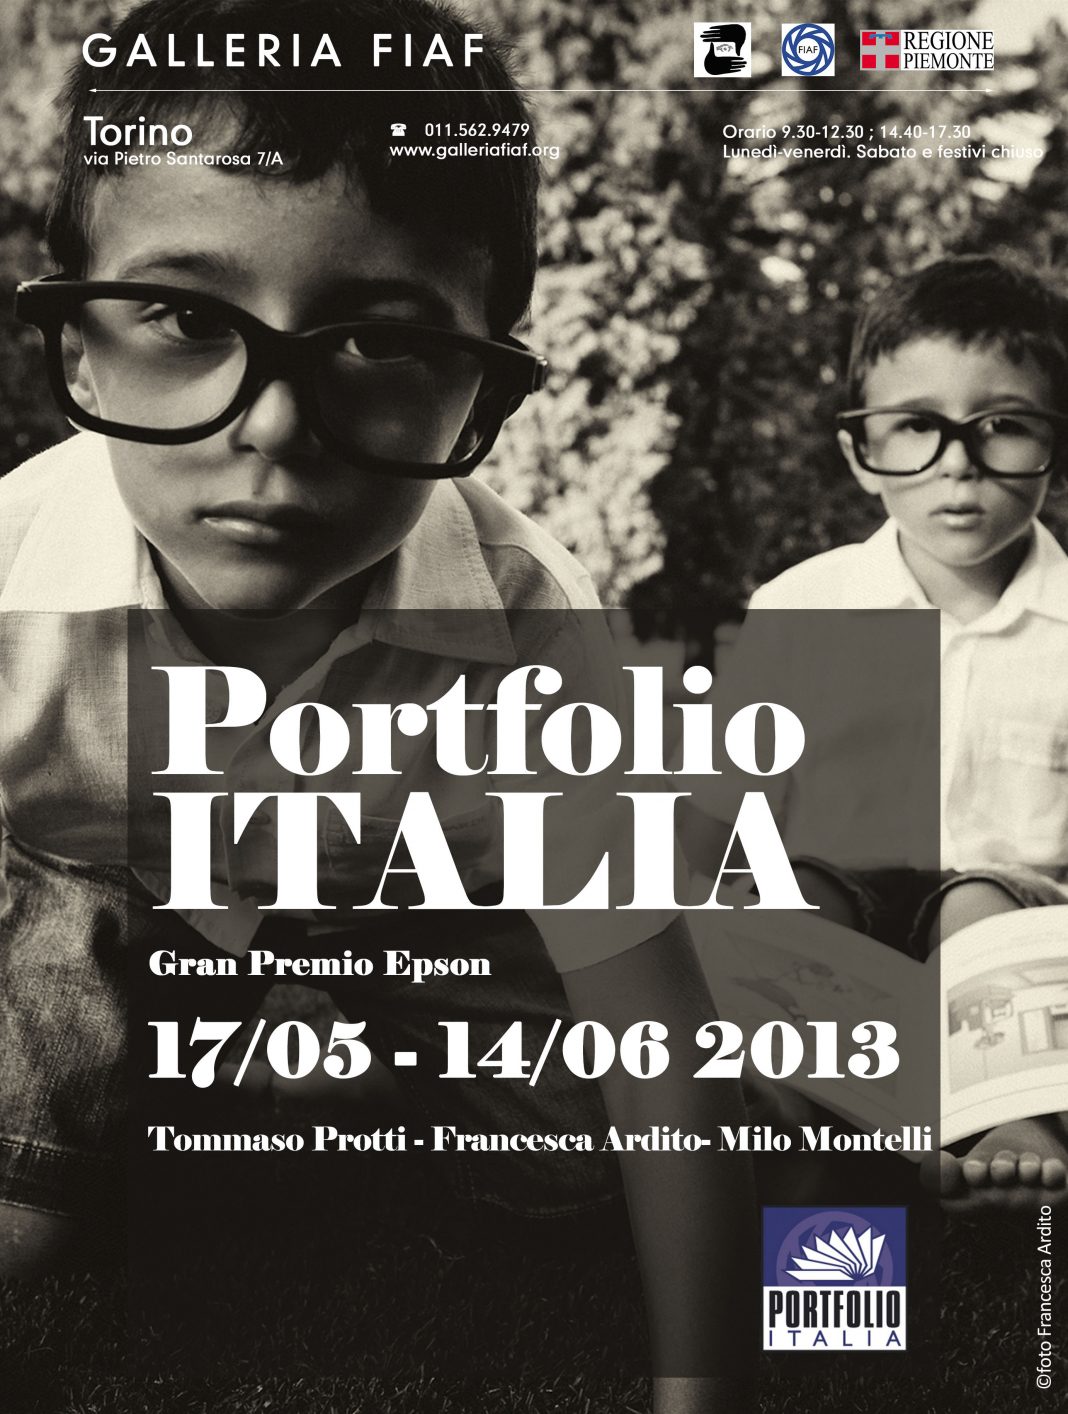 Portfolio Italia – Gran Premio Epsonhttps://www.exibart.com/repository/media/eventi/2013/05/portfolio-italia-8211-gran-premio-epson-1068x1414.jpg